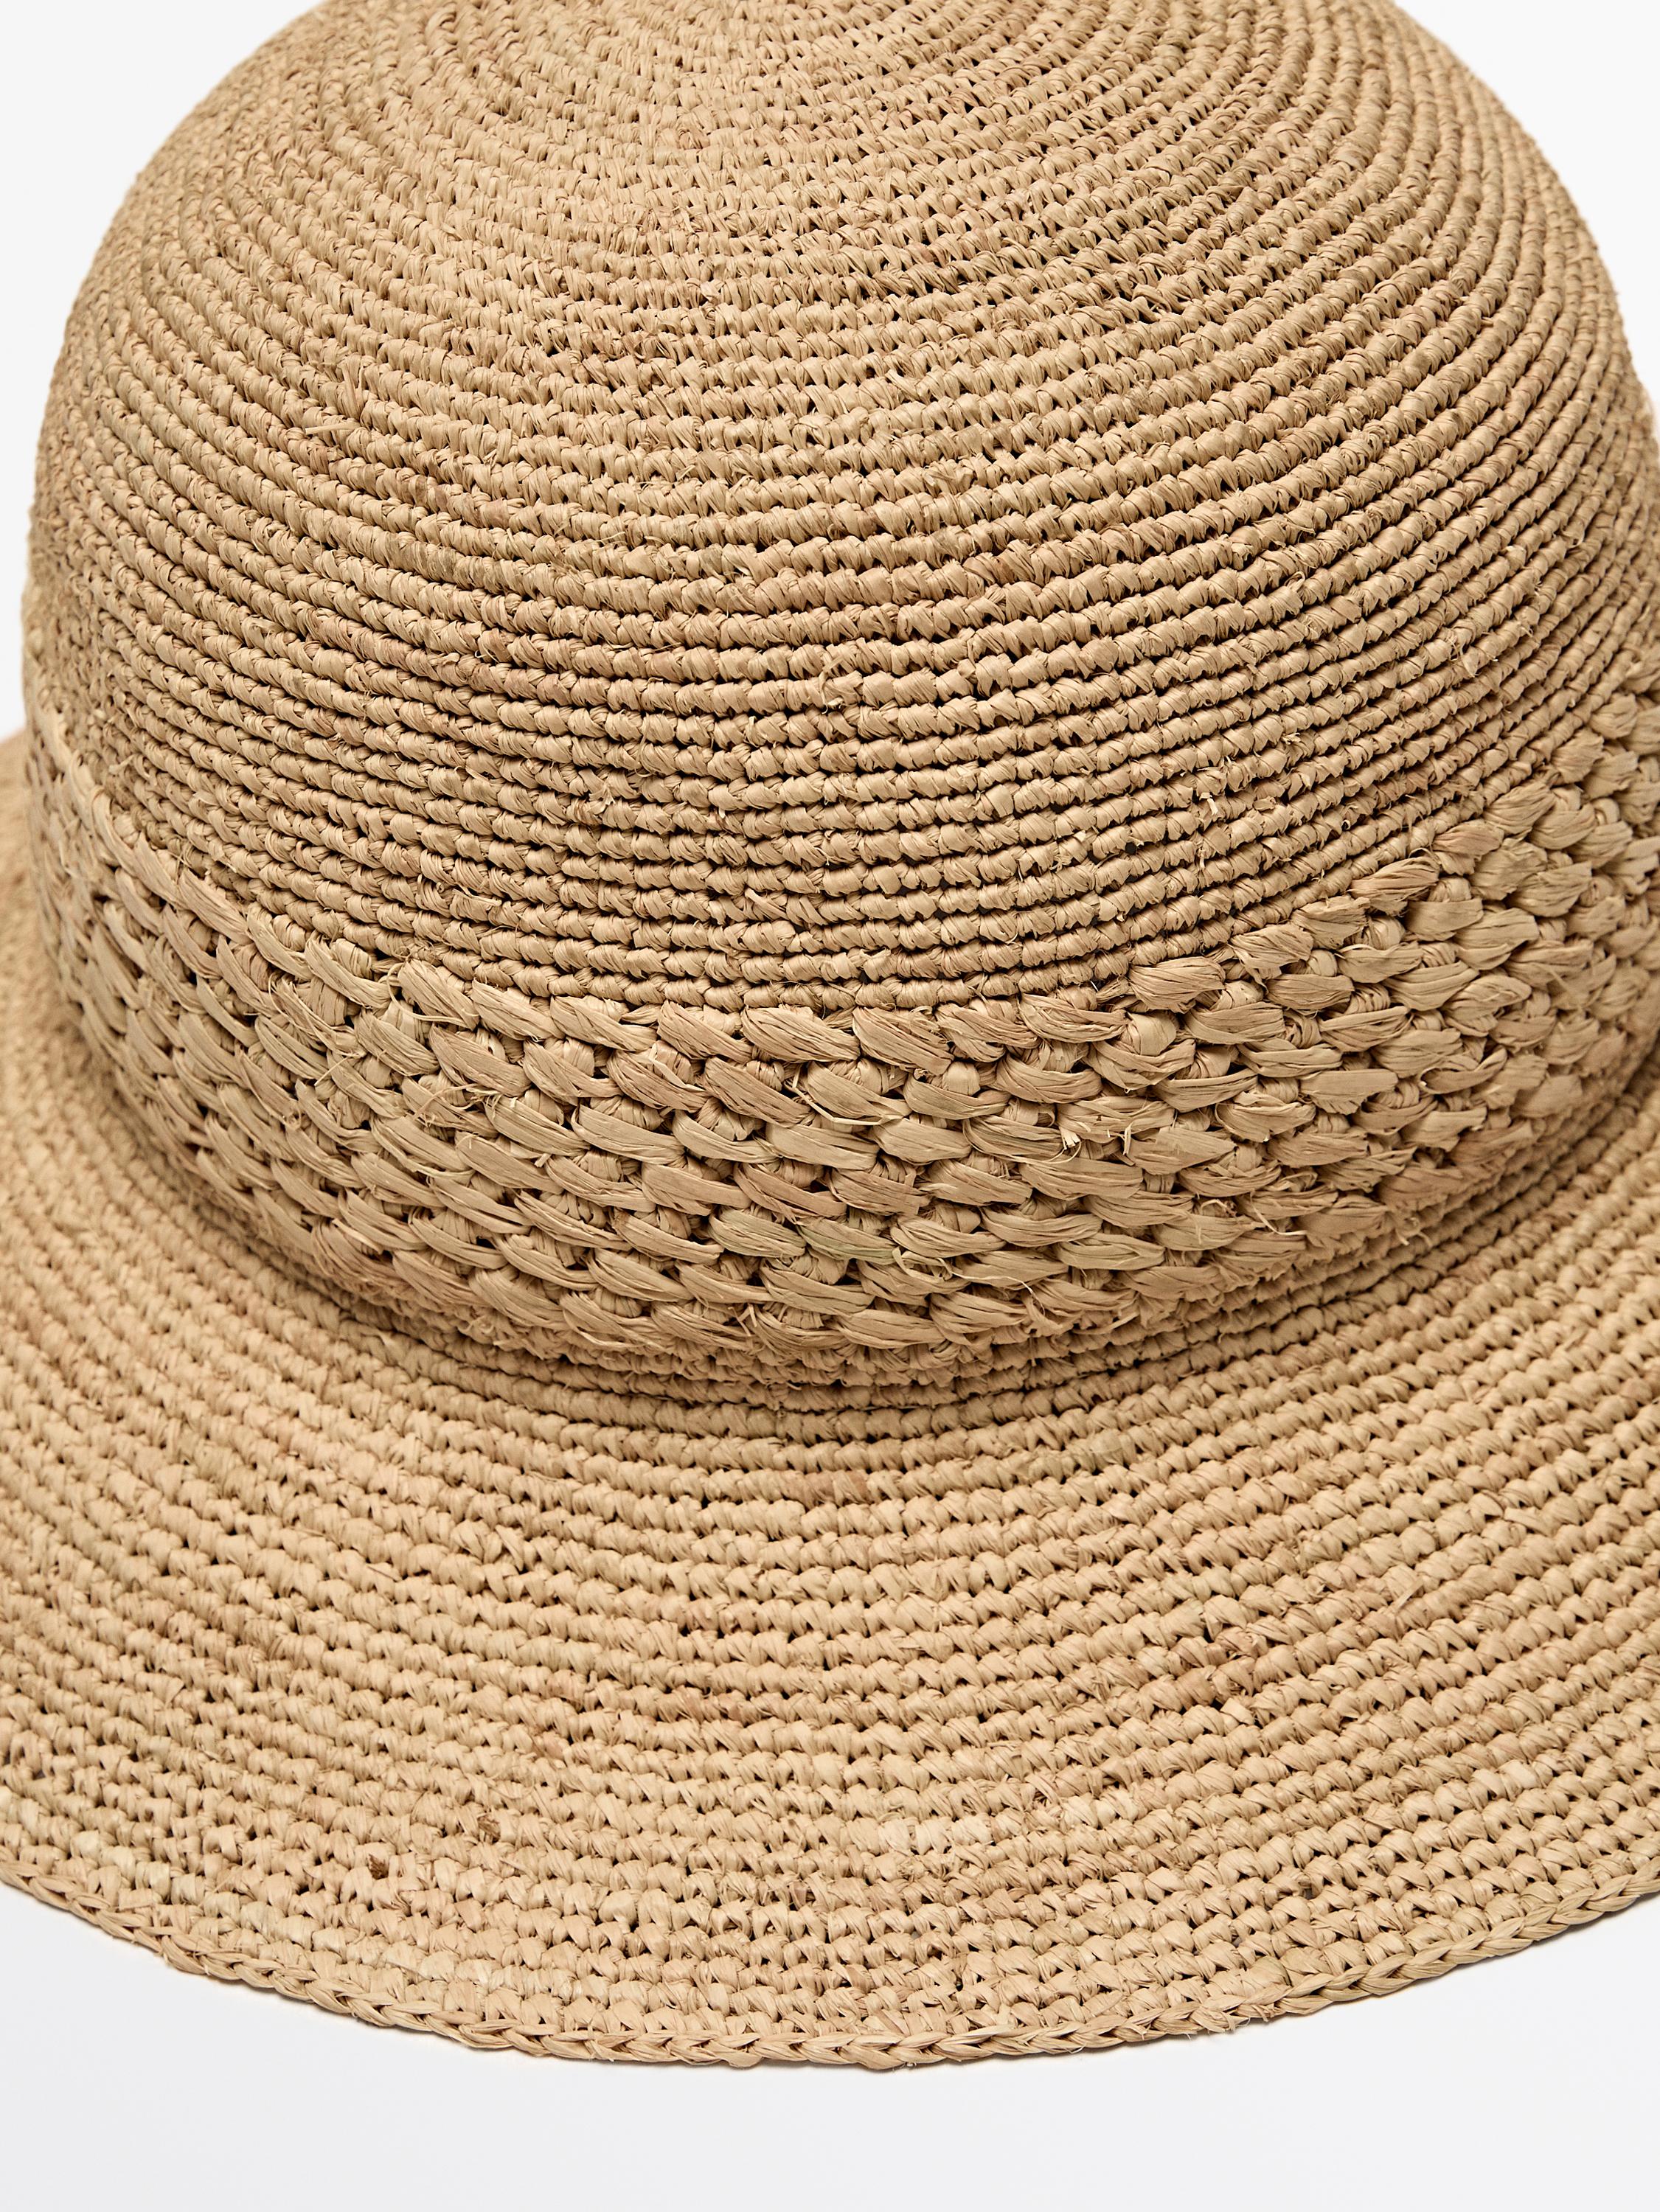 Raffia hat with braided thread